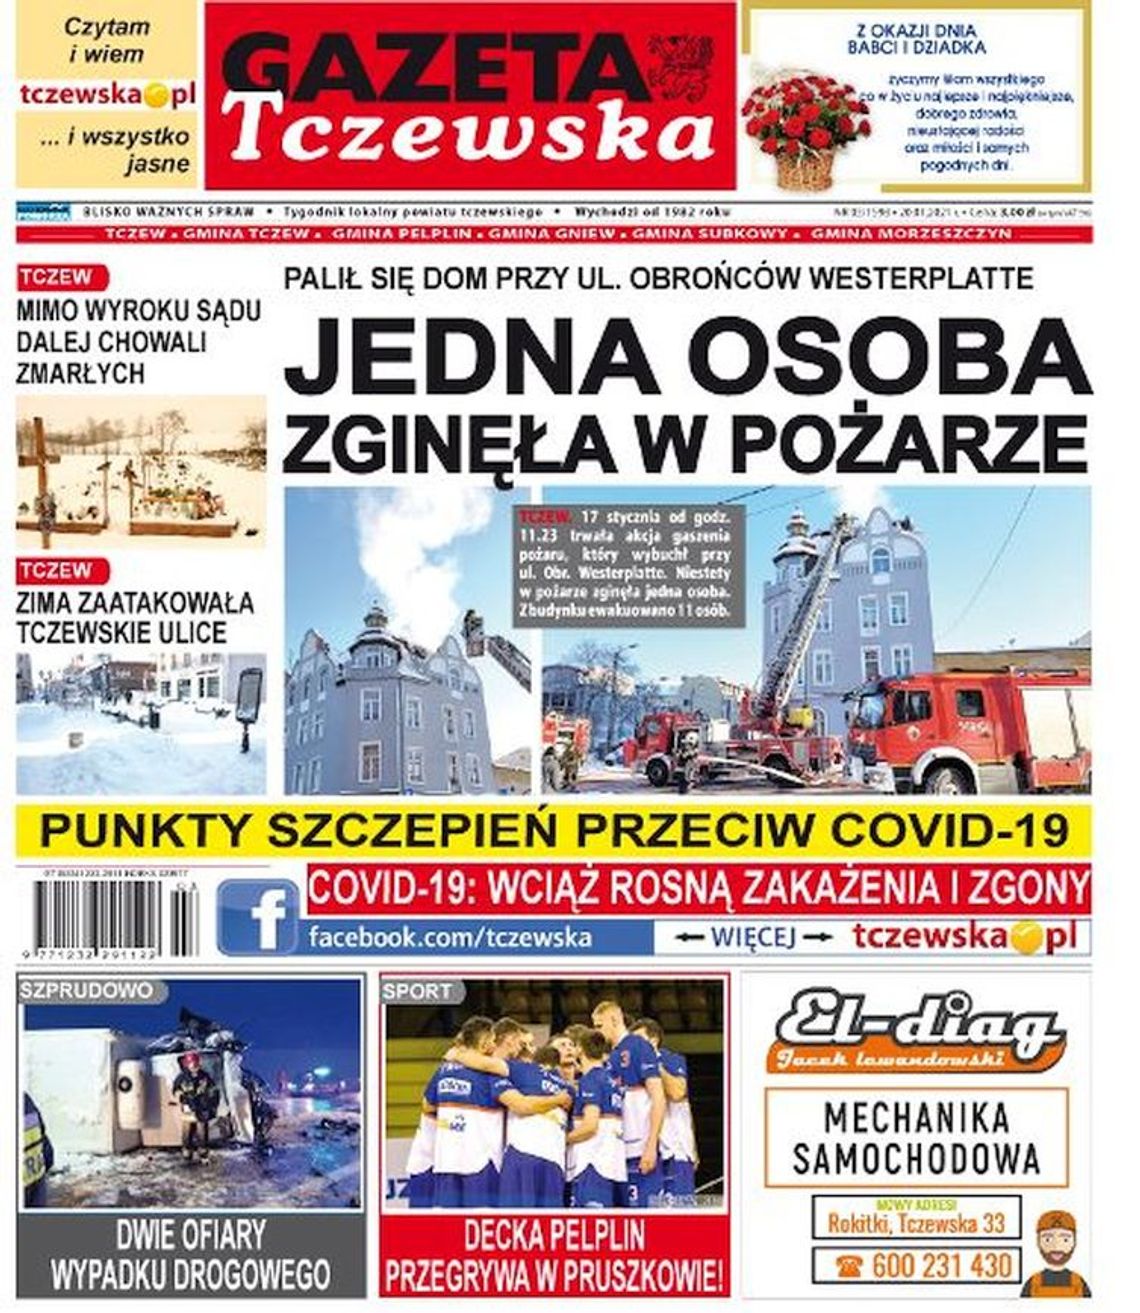 Najnowszy numer Gazety Tczewskiej już dziś w Twoim kiosku. Świeże informacje z Tczewa i okolic naszego powiatu w sprzedaży. Co w środku?